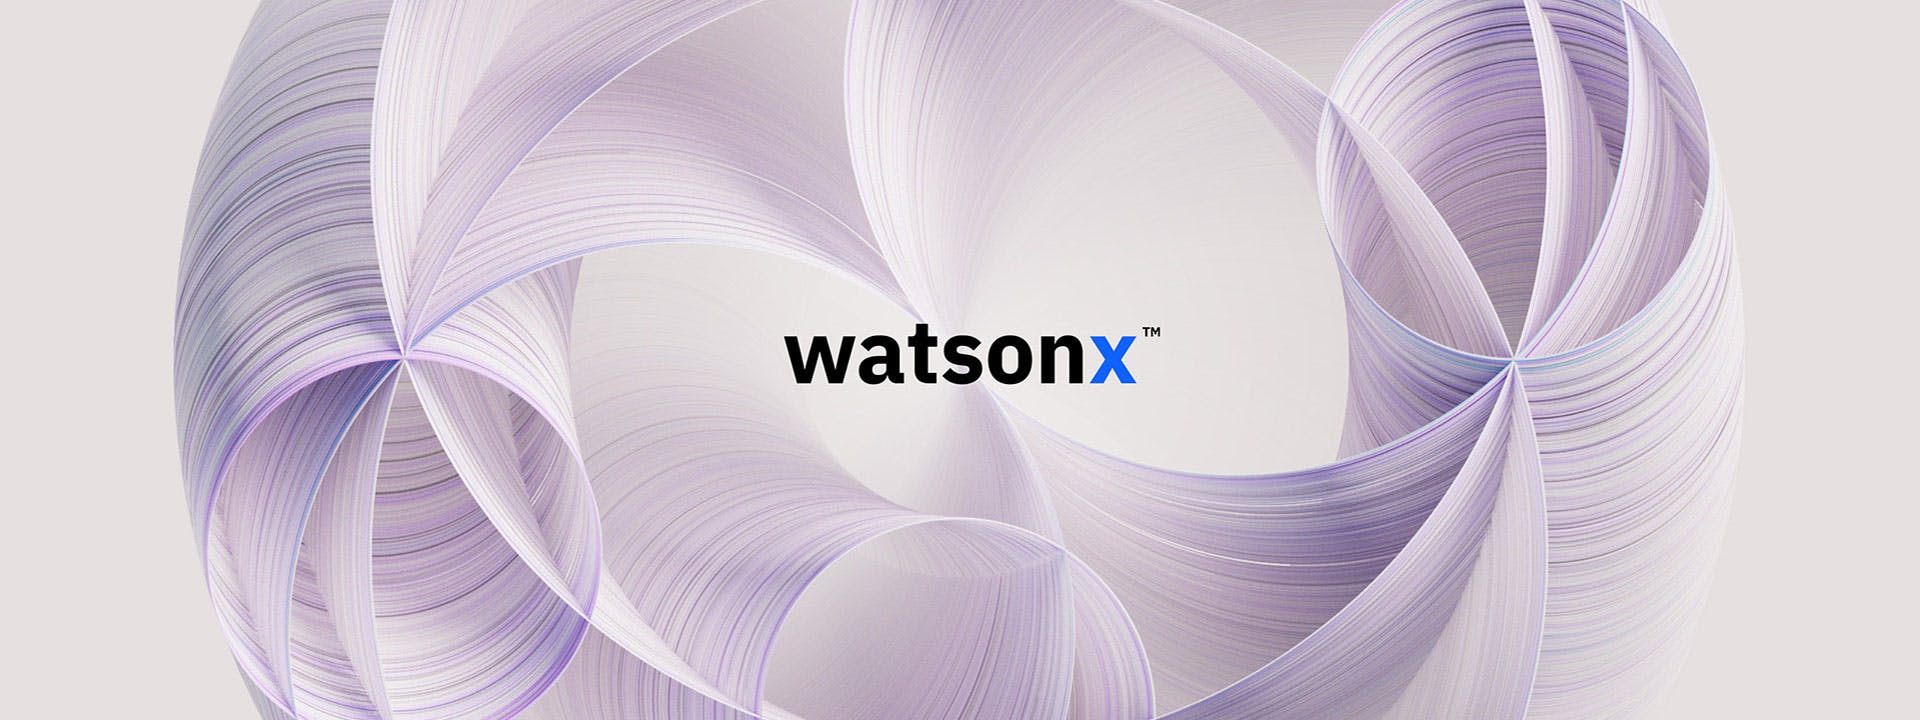 Watsonx: A GenAI platform that's built for business